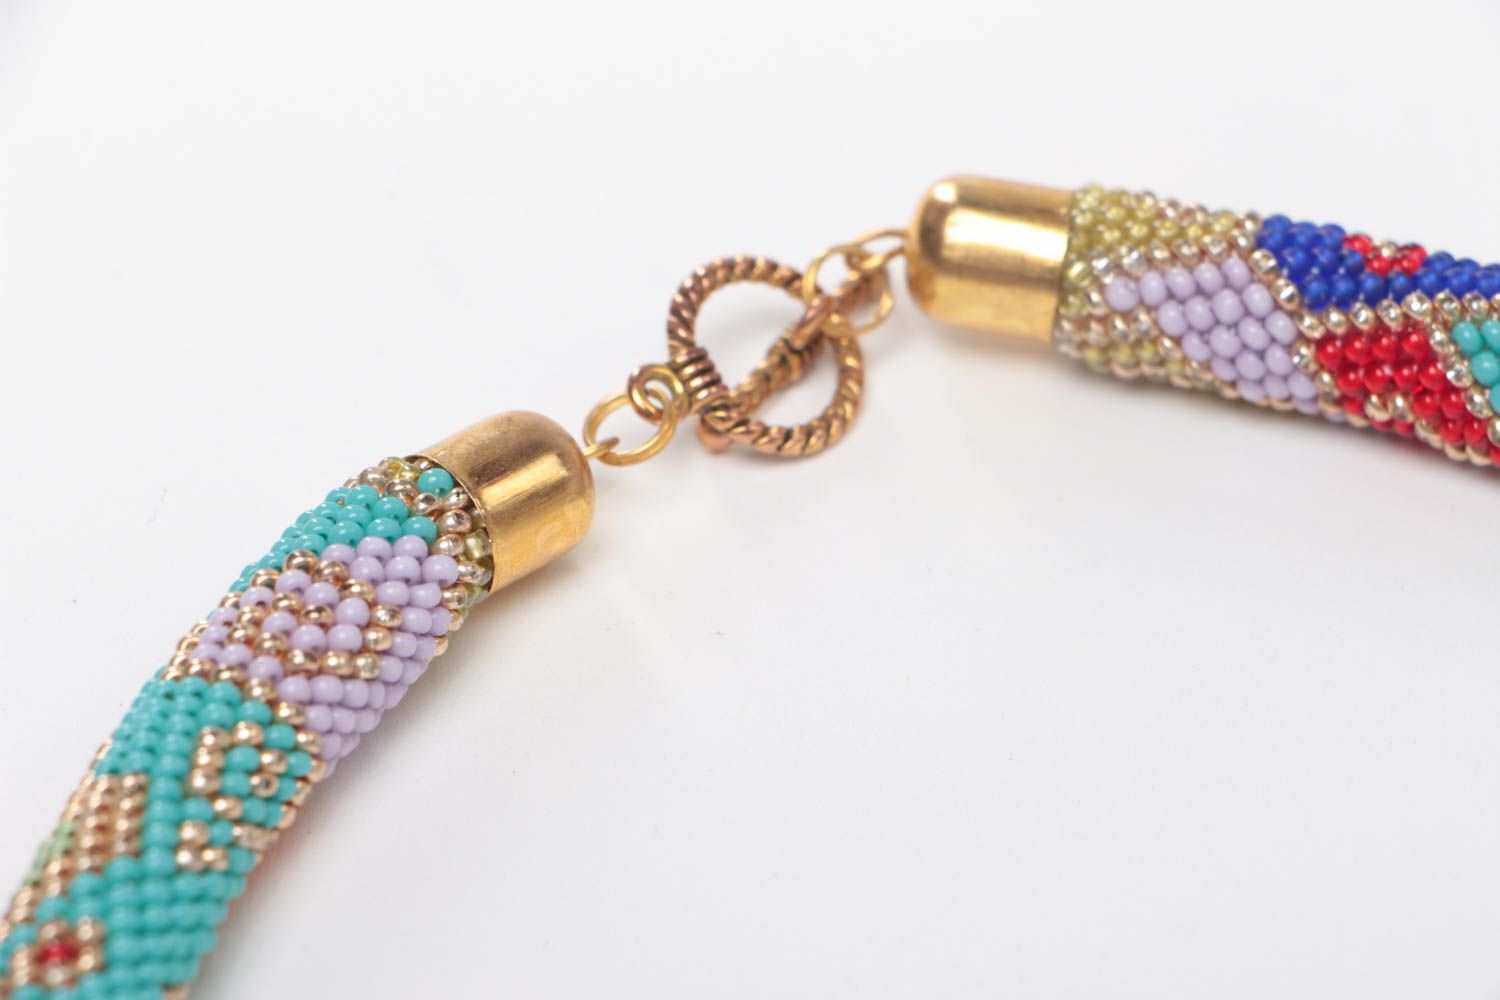 Ожерелье из бисера в форме жгута цветное стильное необычное модное ручной работы фото 4